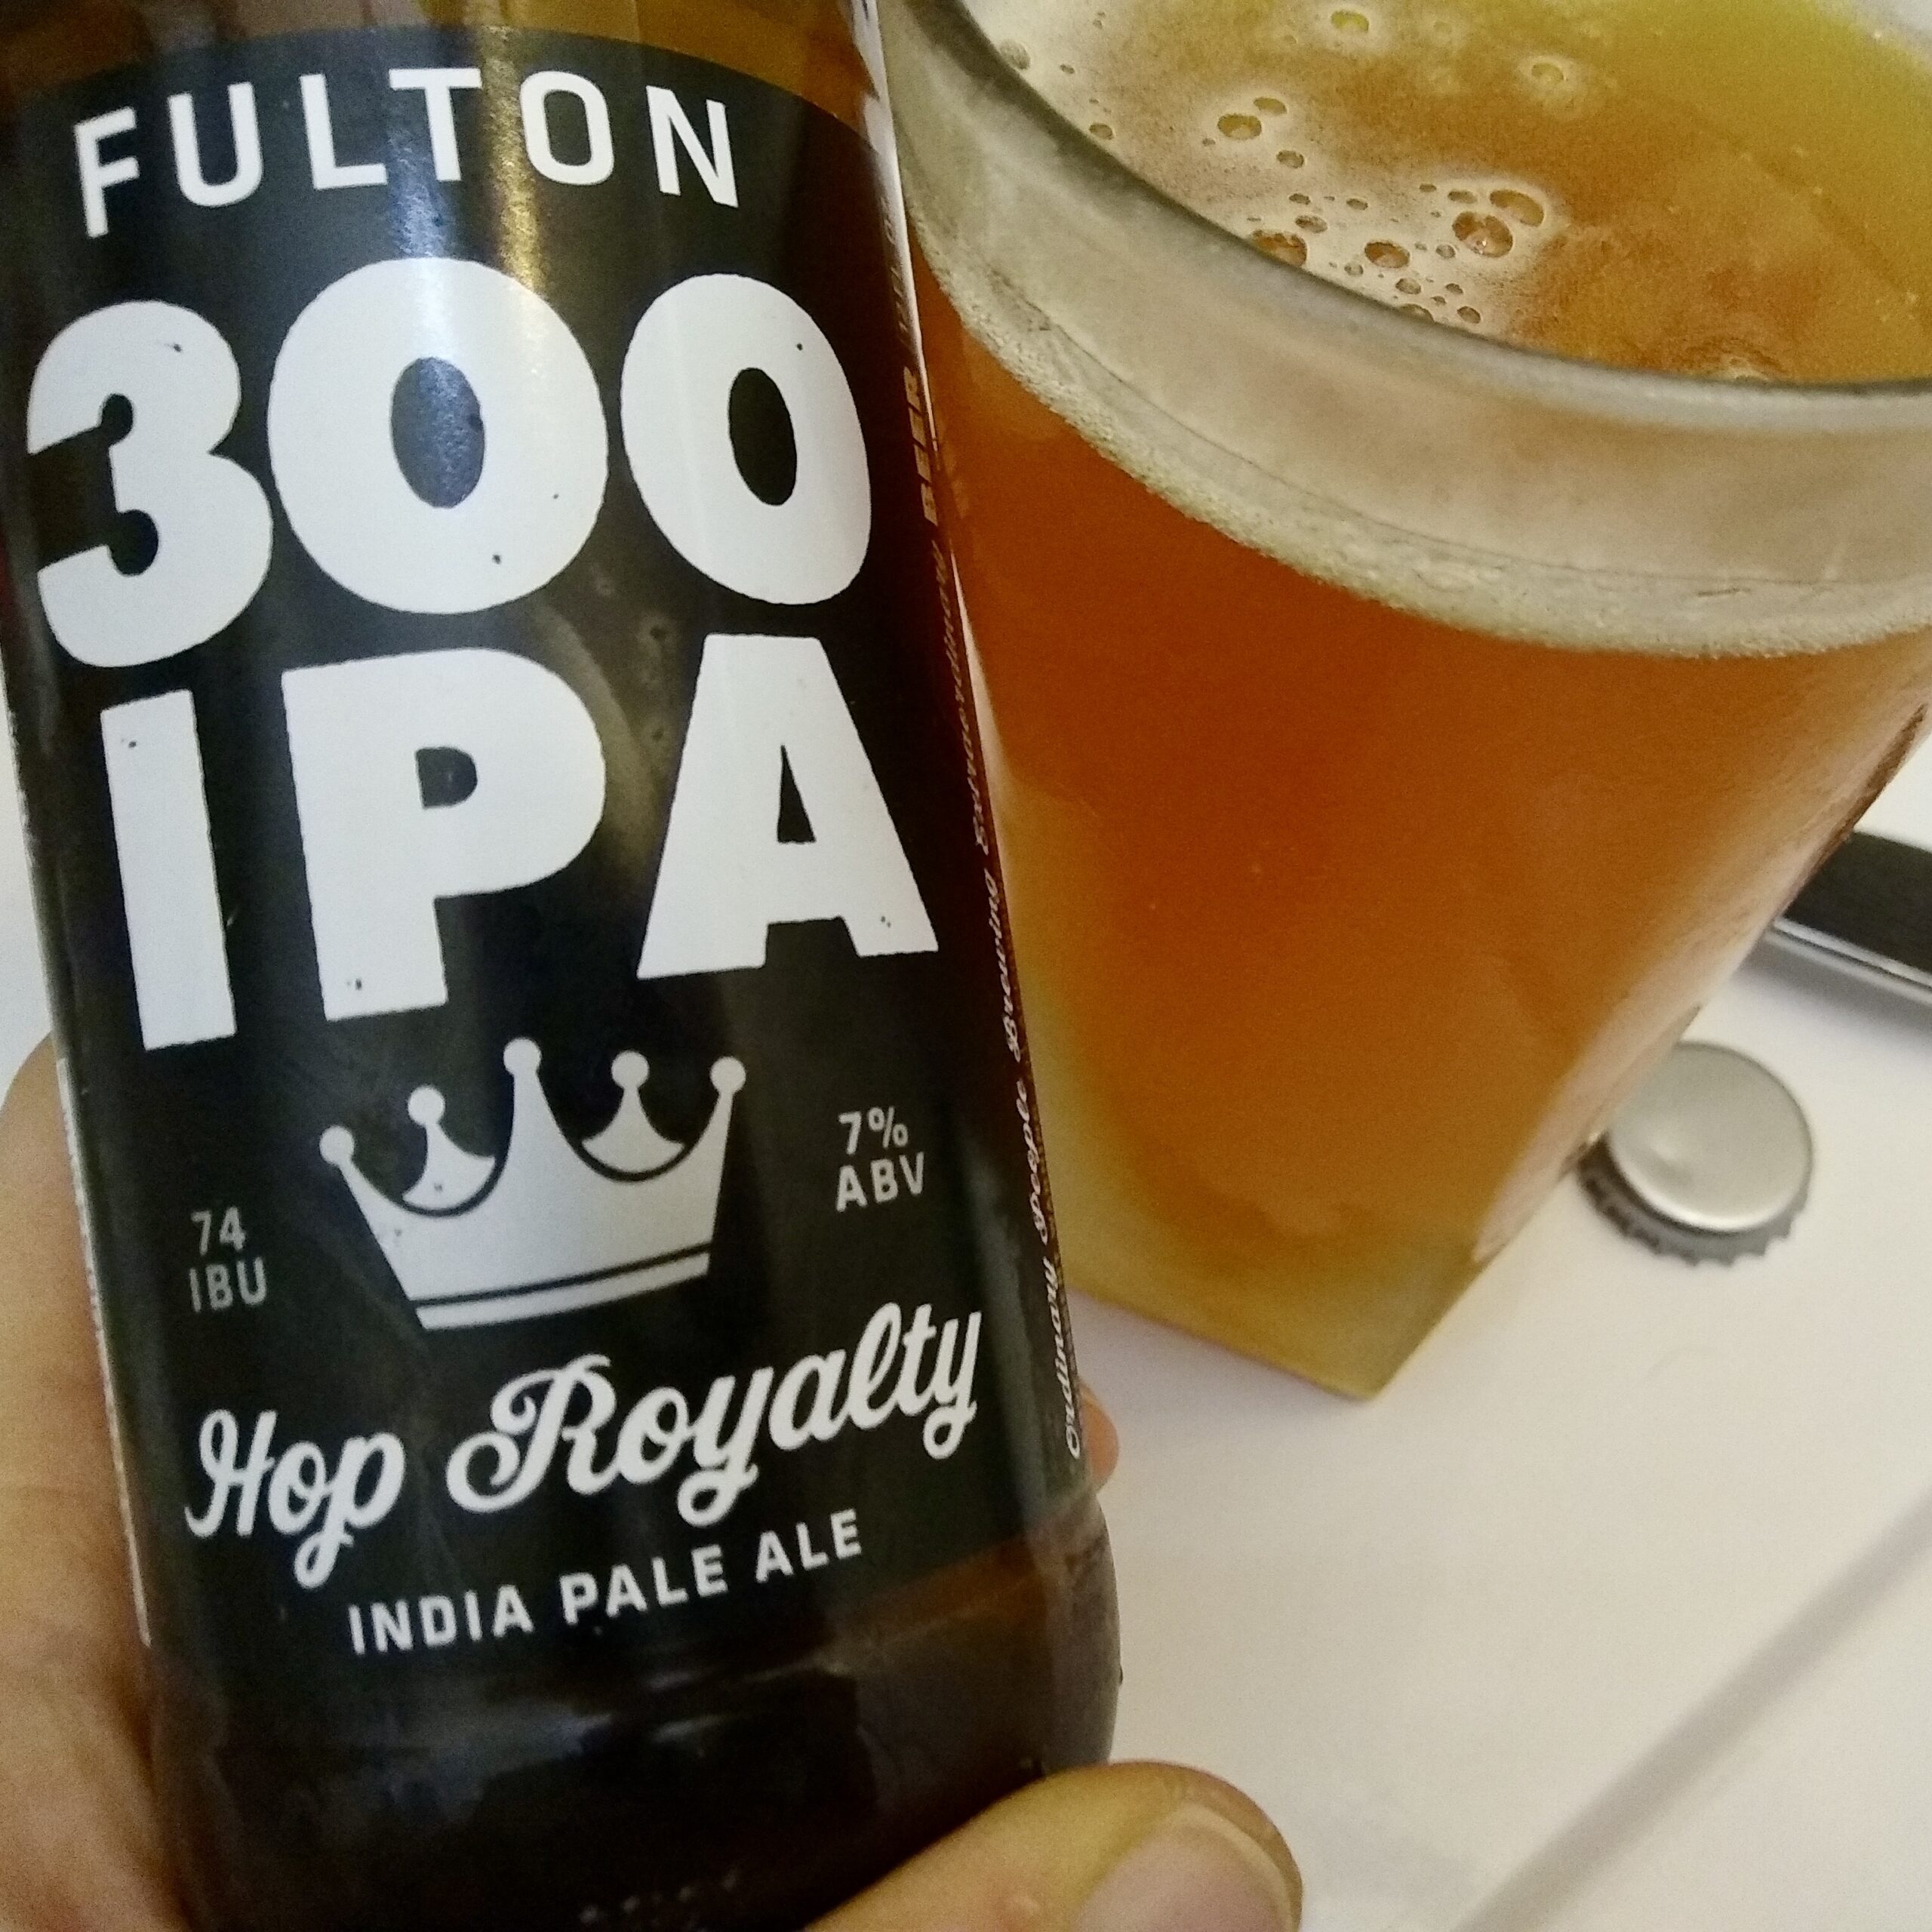 Fulton 300 IPA